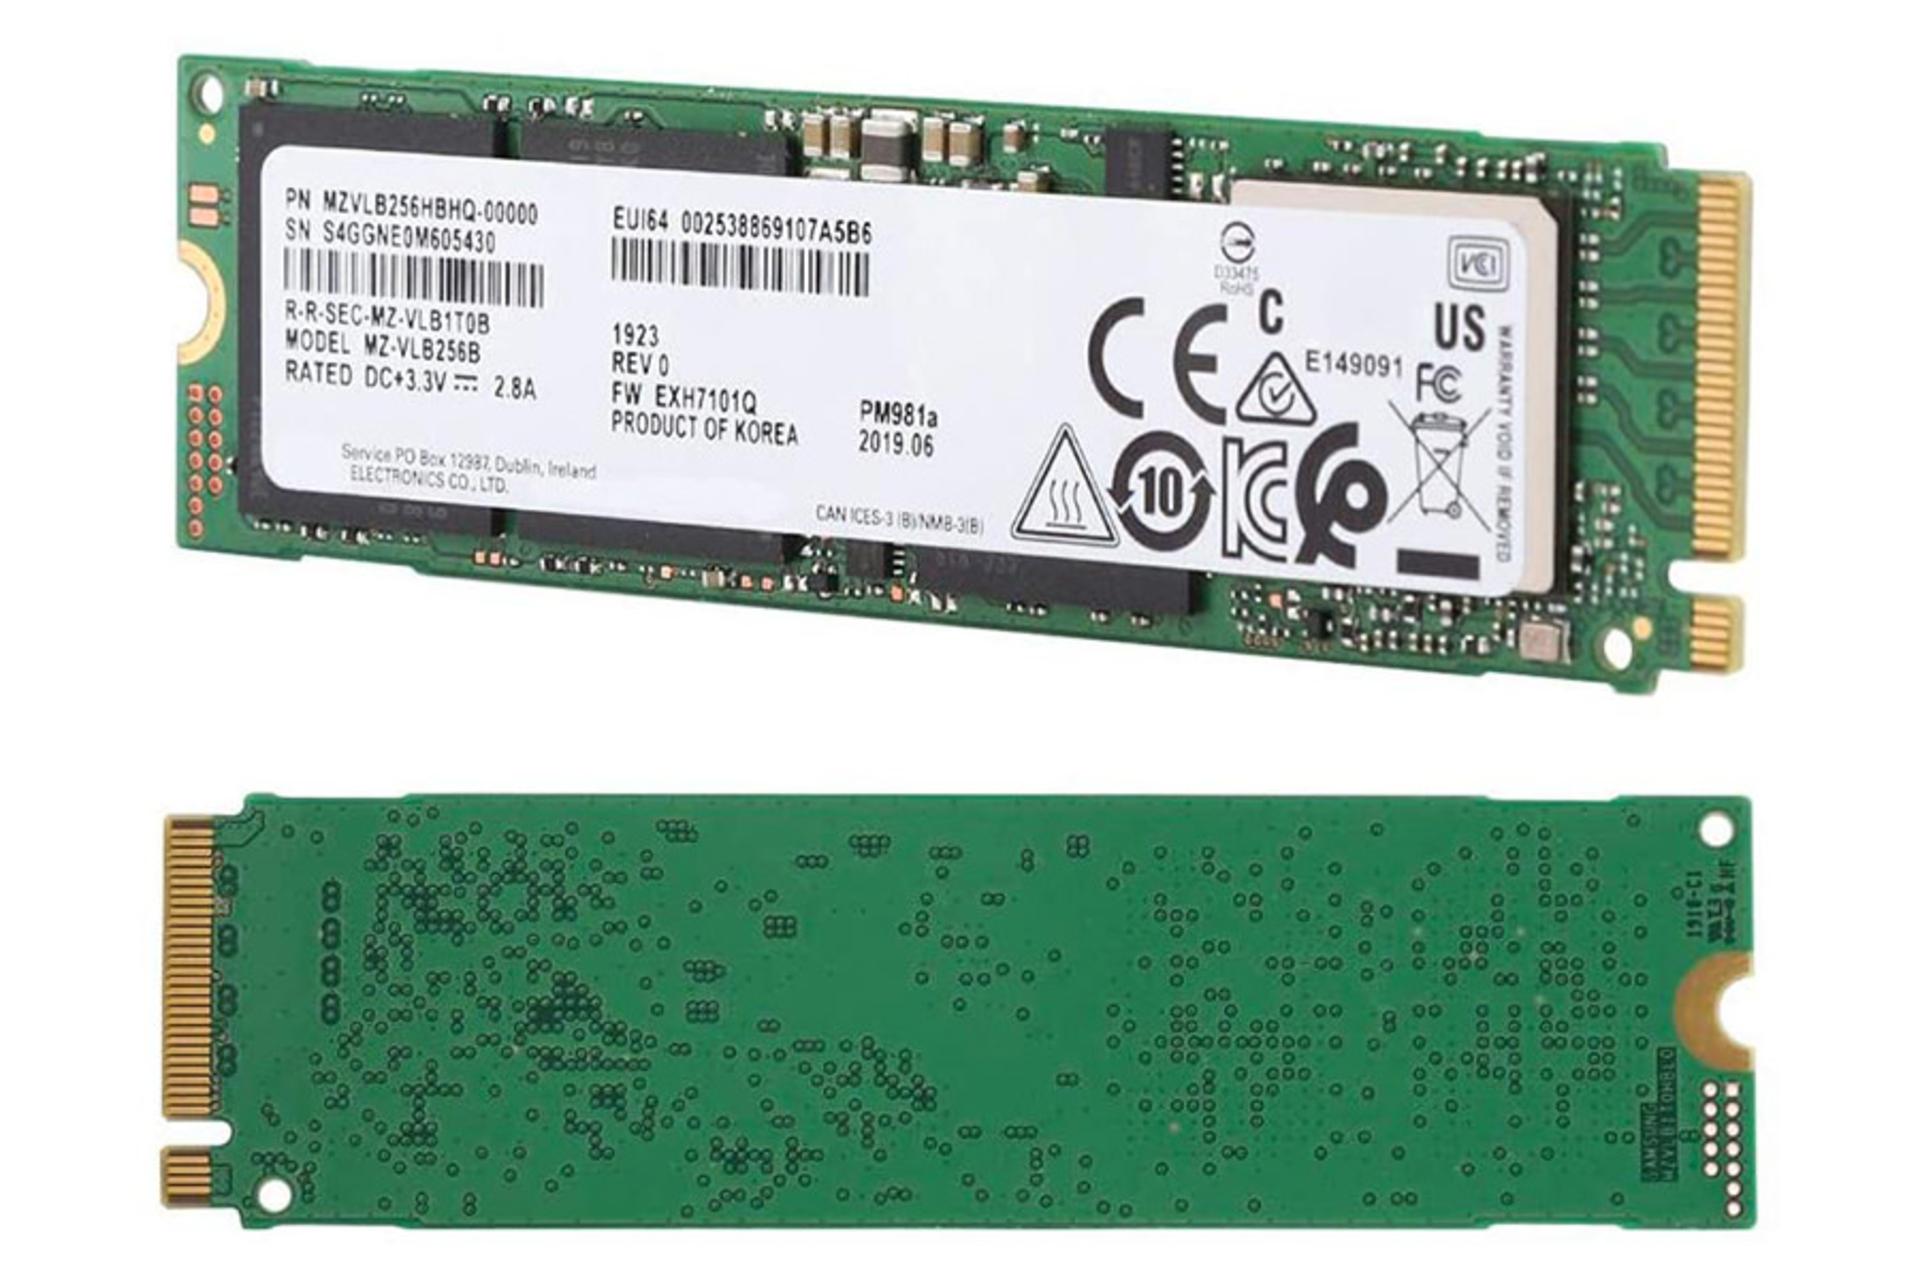 مرجع متخصصين ايران Samsung PM981a PCIe M.2 / سامسونگ PM981a PCIe M.2